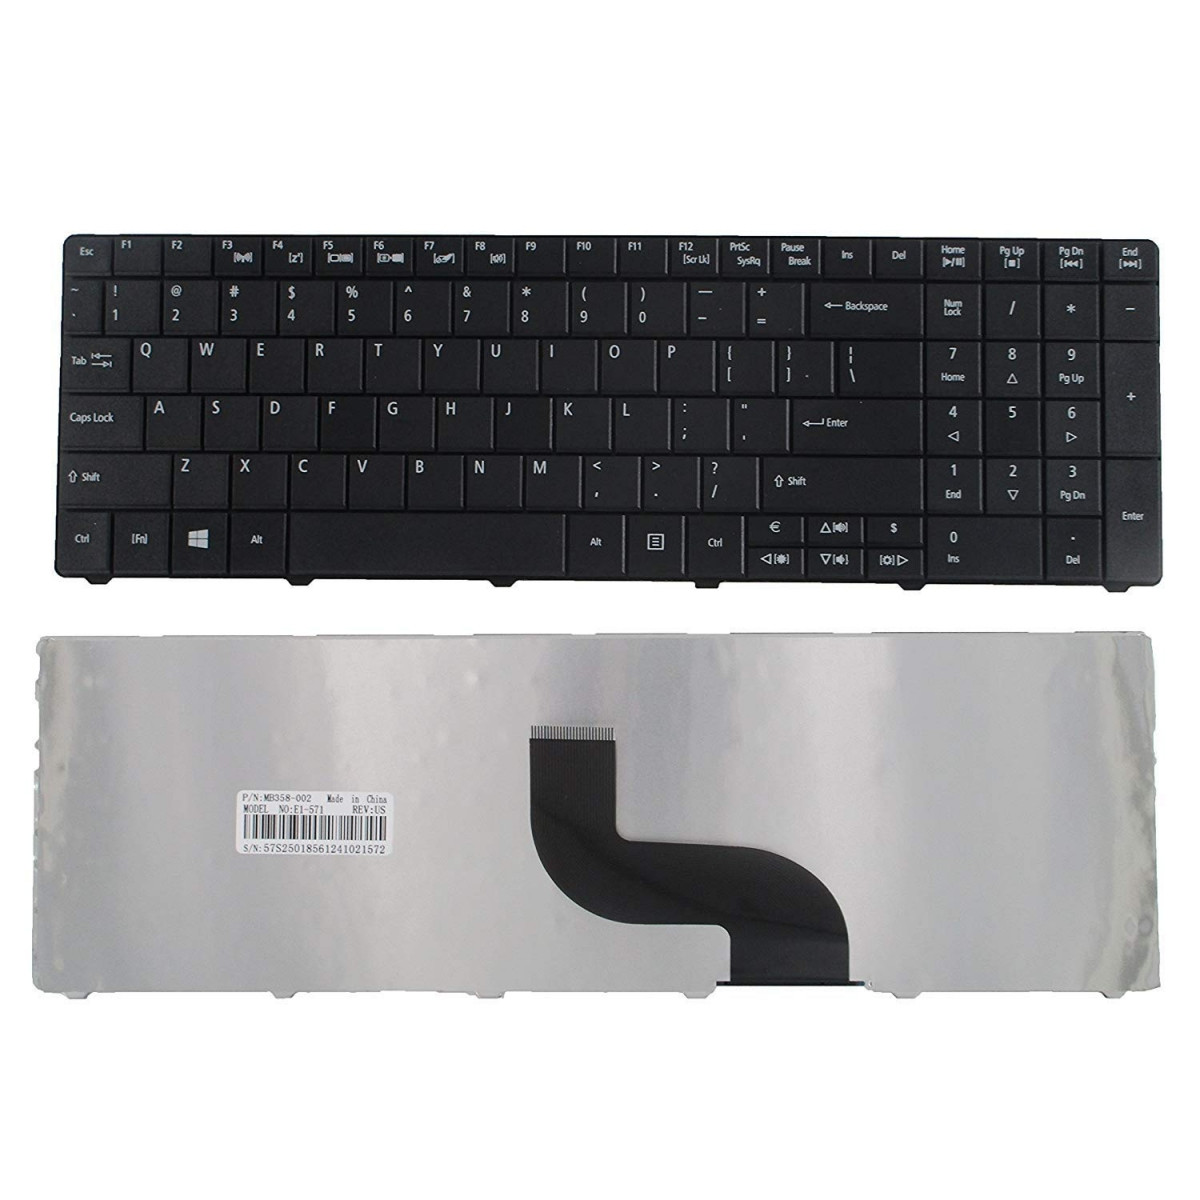 Клавиатура для ноутбука Acer Aspire E1-521, E1-531, E1-531G, E1-571, E1-571G